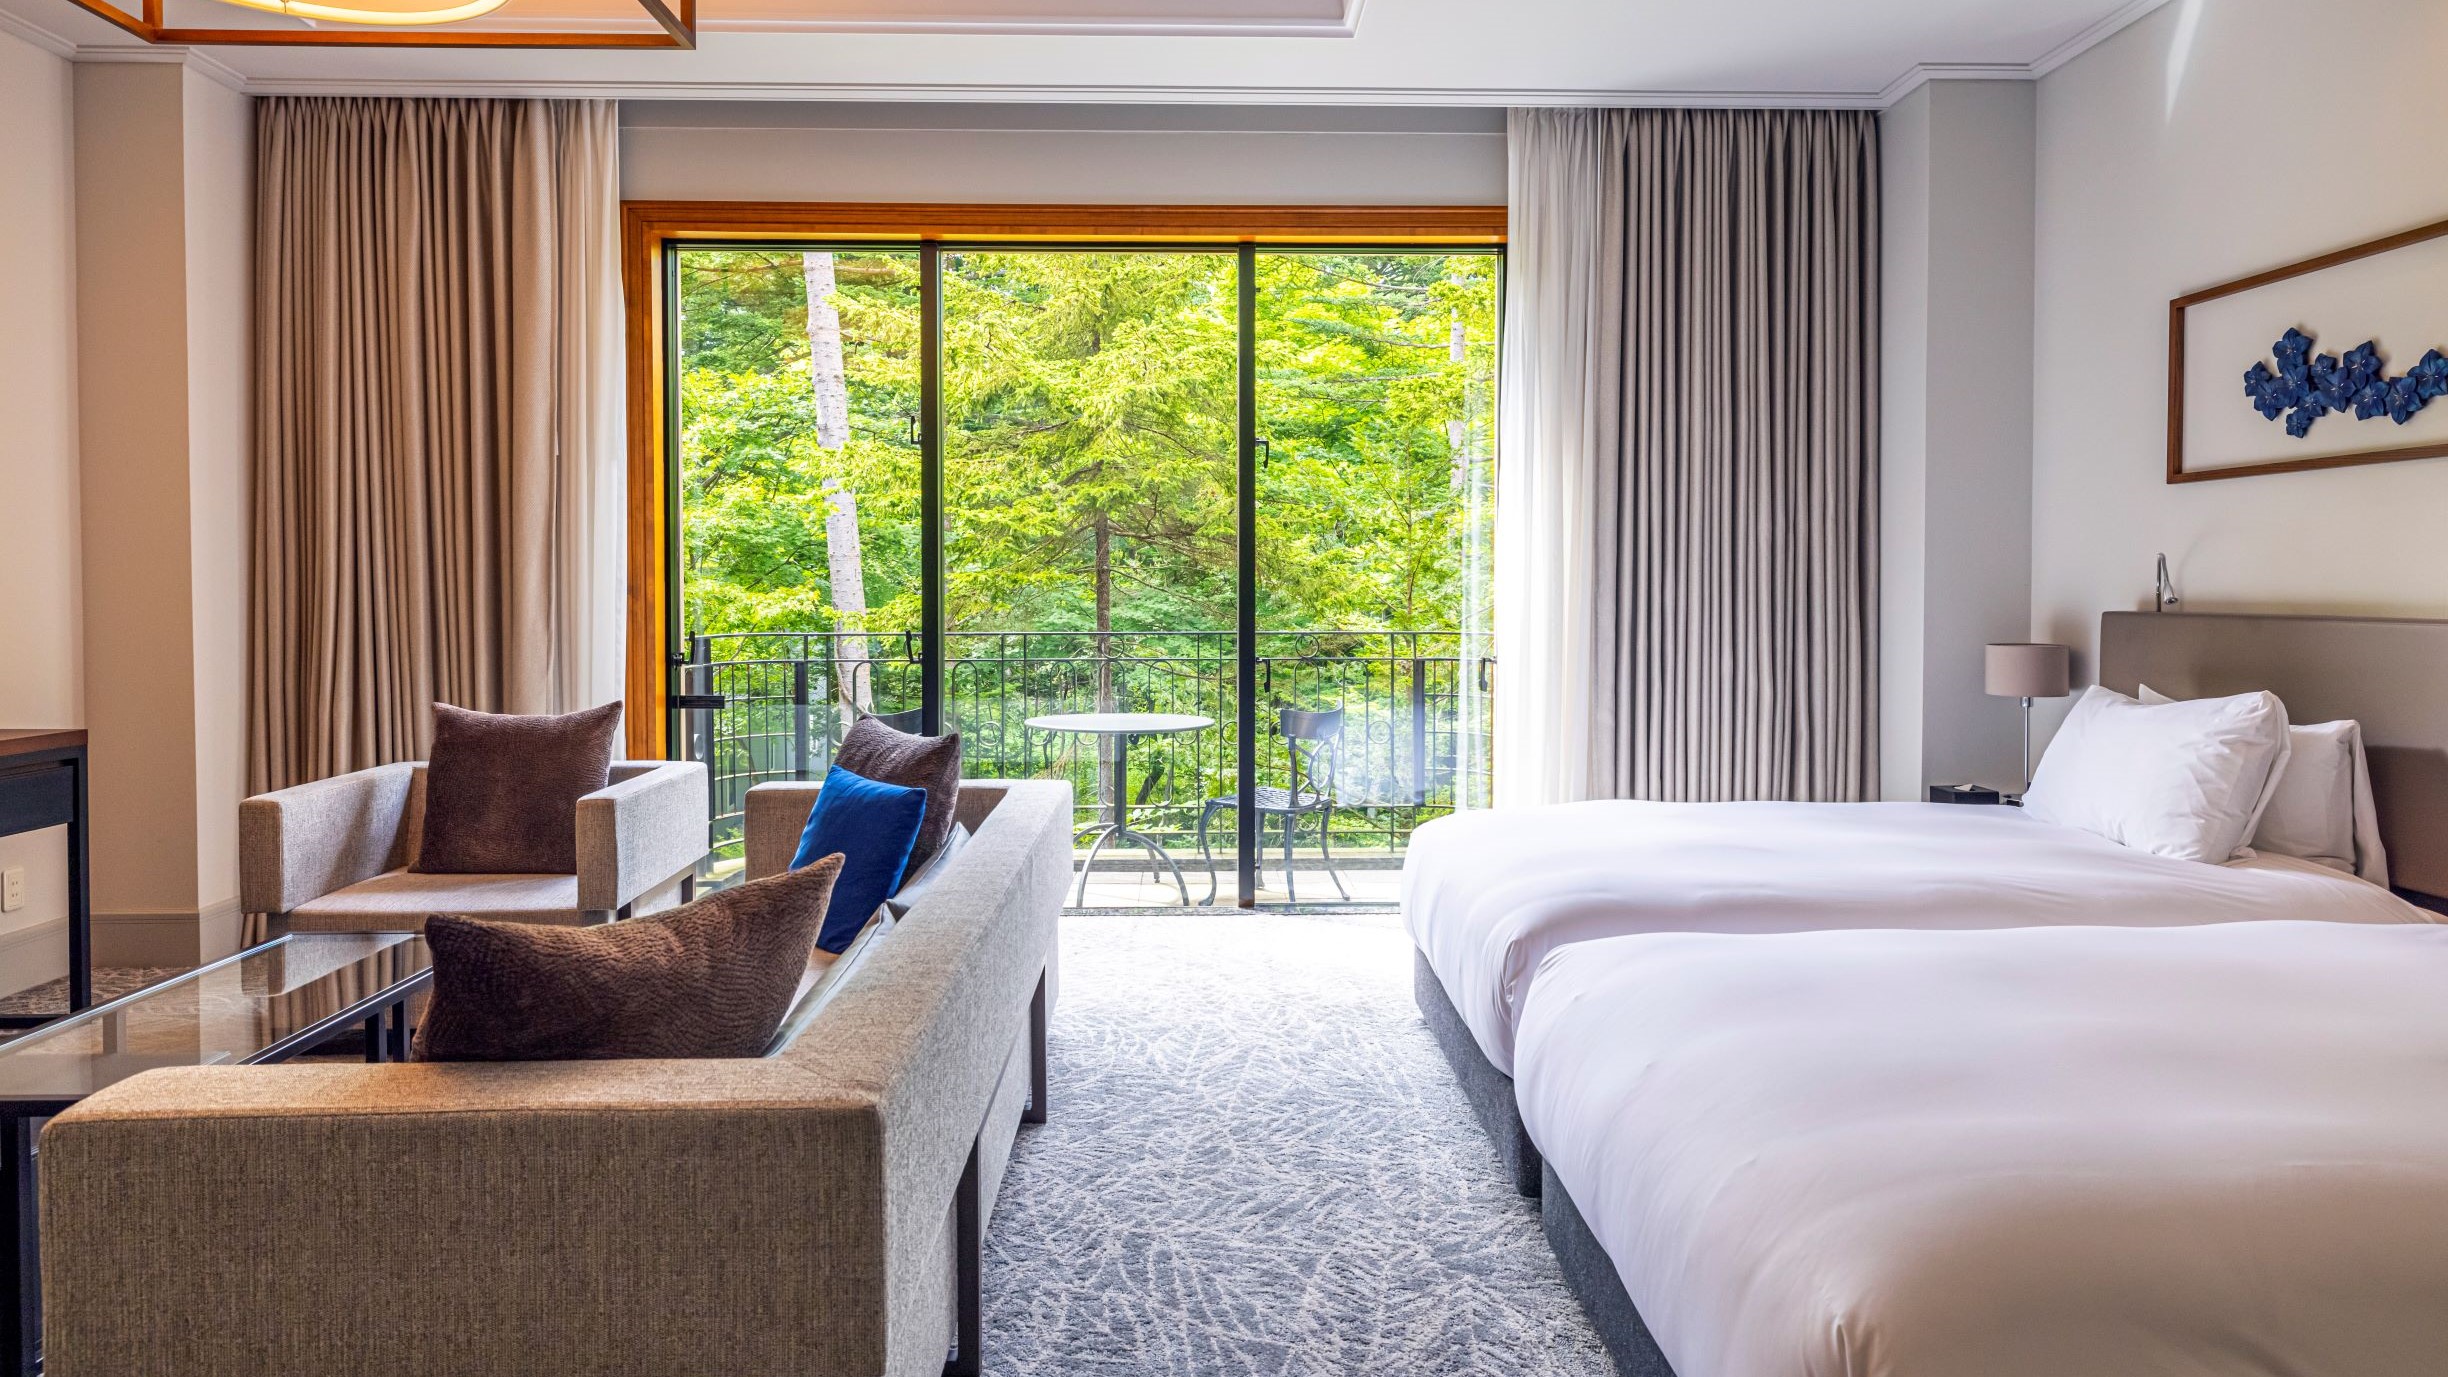 当ホテル全50室のうち約9割の客室が40平米を越える軽井沢らしい広々とした間取りです。